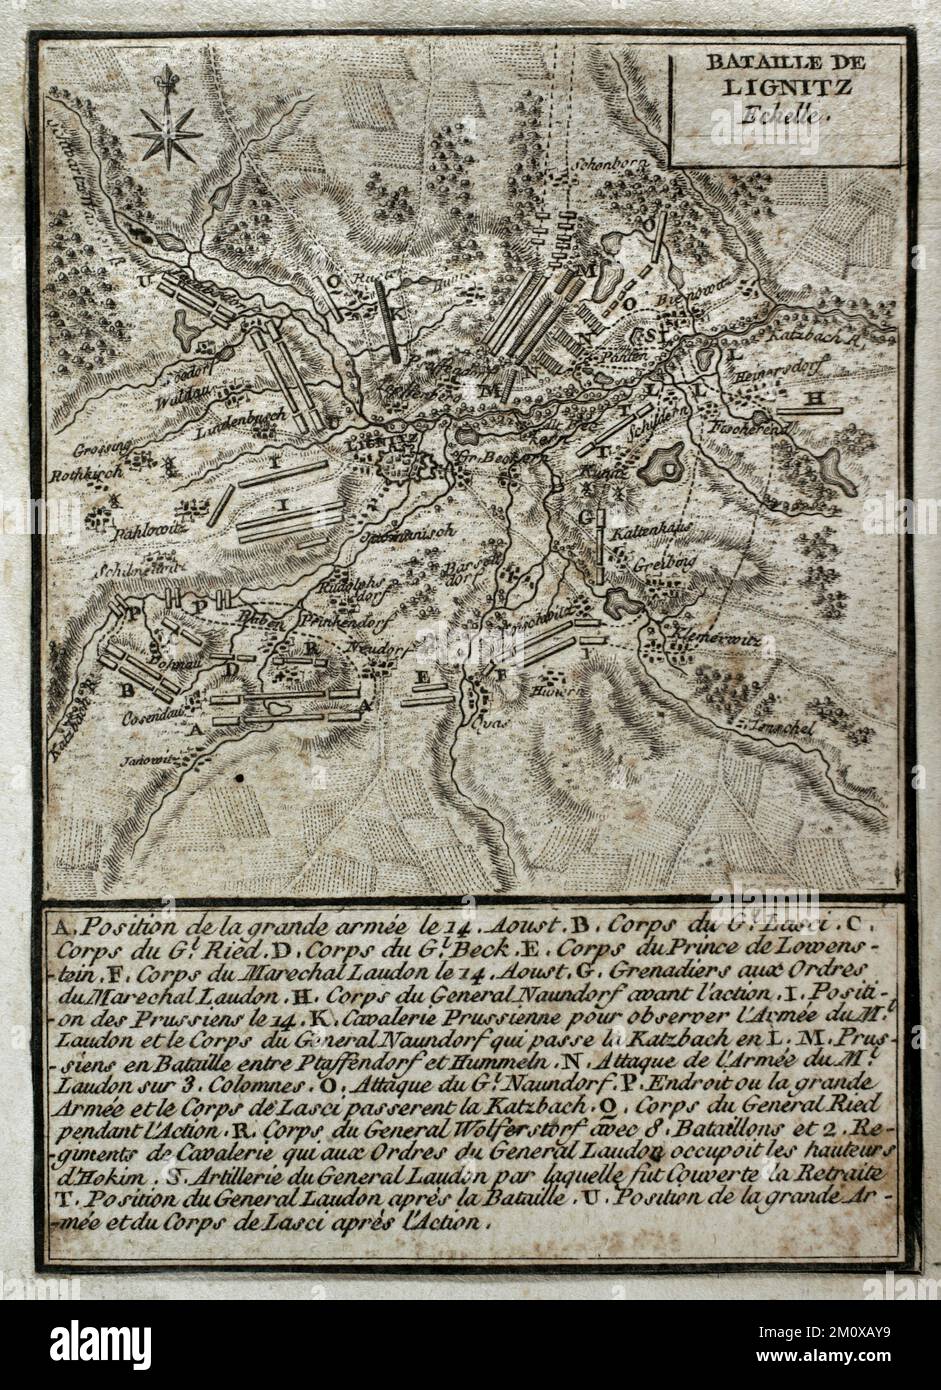 Guerra dei sette anni (1756-1763). Terza guerra silesiana. Mappa della Battaglia di Liegnitz (15 agosto 1760). Si è giocato sulla riva del fiume Katzbach nella Slesia settentrionale. Un esercito imperiale austriaco, comandato dal maresciallo Daun, si scontrò con l'esercito prussiano guidato da Federico il Grande. Gli austriaci furono sconfitti dai prussiani. Pubblicato nel 1765 dal cartografo Jean de Beaurain (1696-1771) come illustrazione della sua Grande carta della Germania, con gli eventi che si sono verificati durante la Guerra dei sette anni. Edizione francese, 1765. Biblioteca storica militare di Barcellona (Biblioteca Histórico Militar de Ba Foto Stock